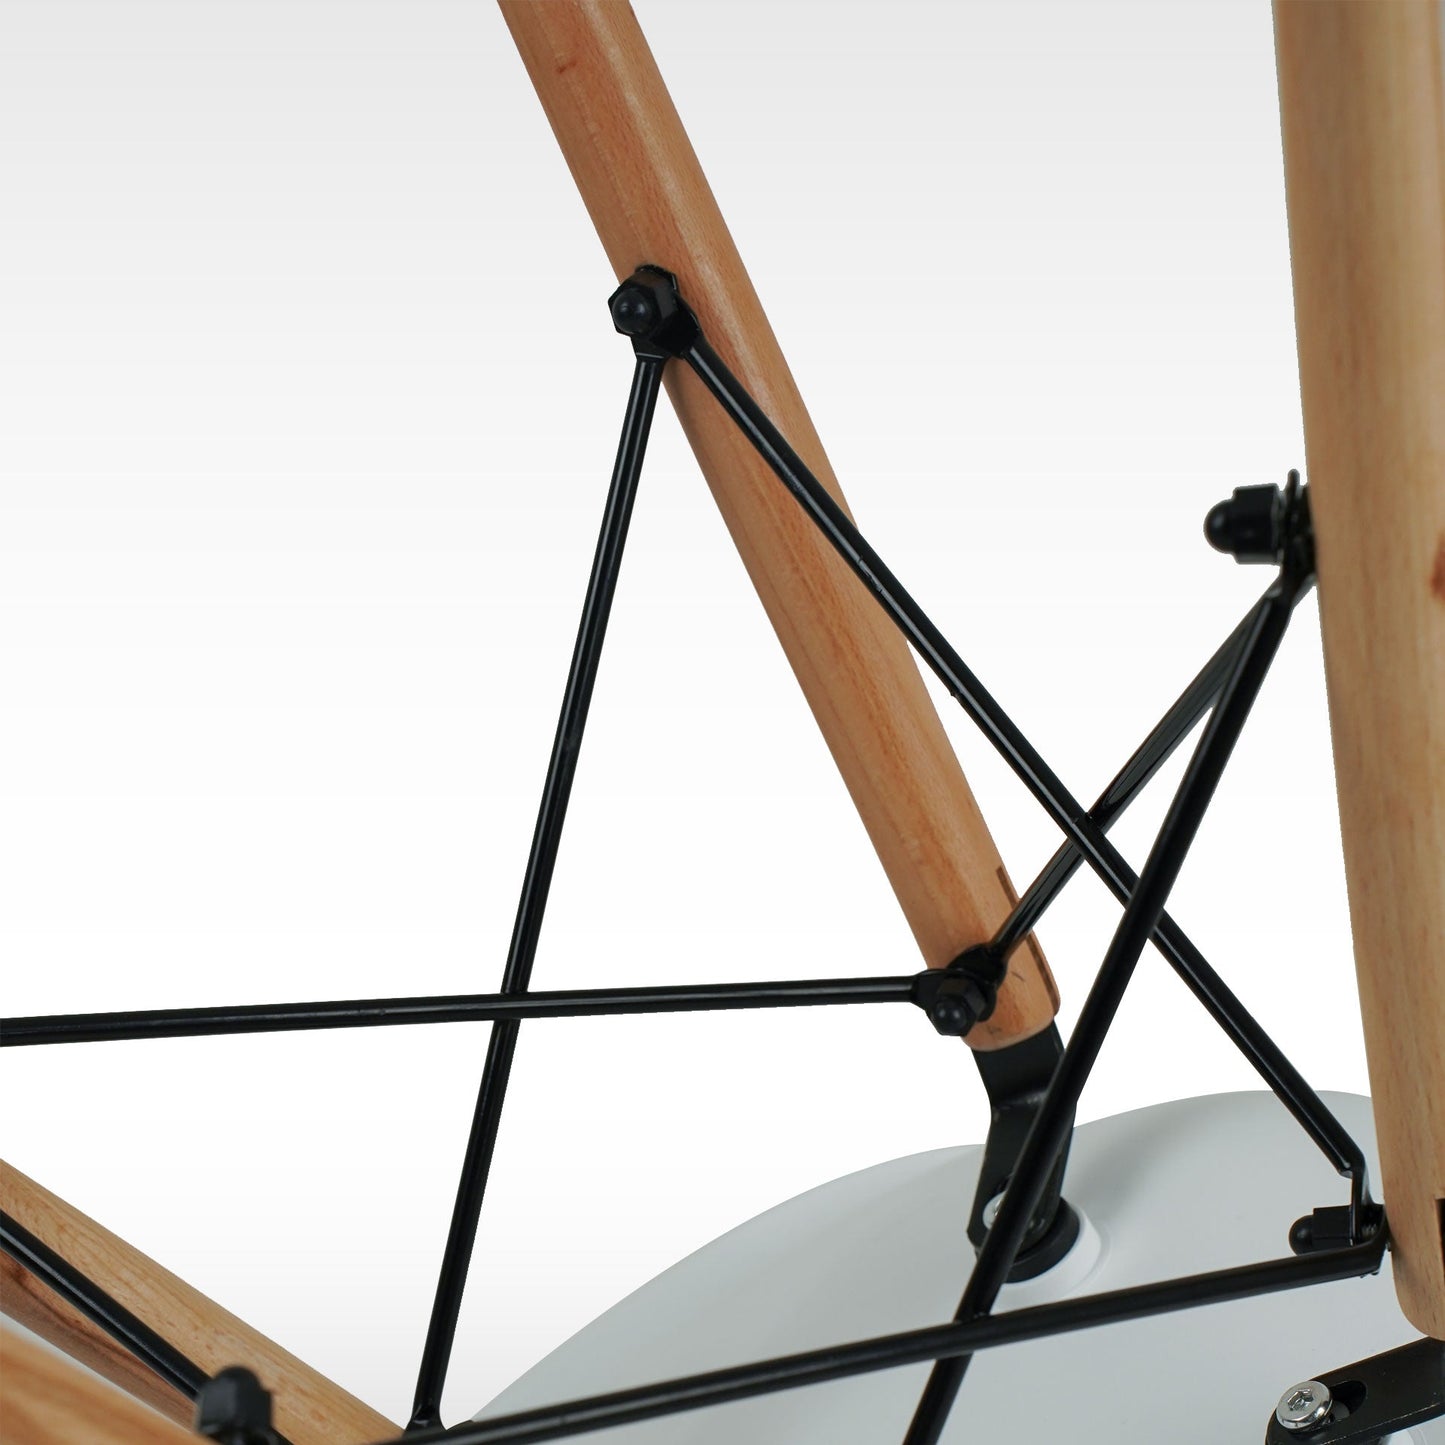 Silla Mirel Shell Minimalista para Comedor e interiores del Hogar- Diseño moderno y ergonómico Set 4